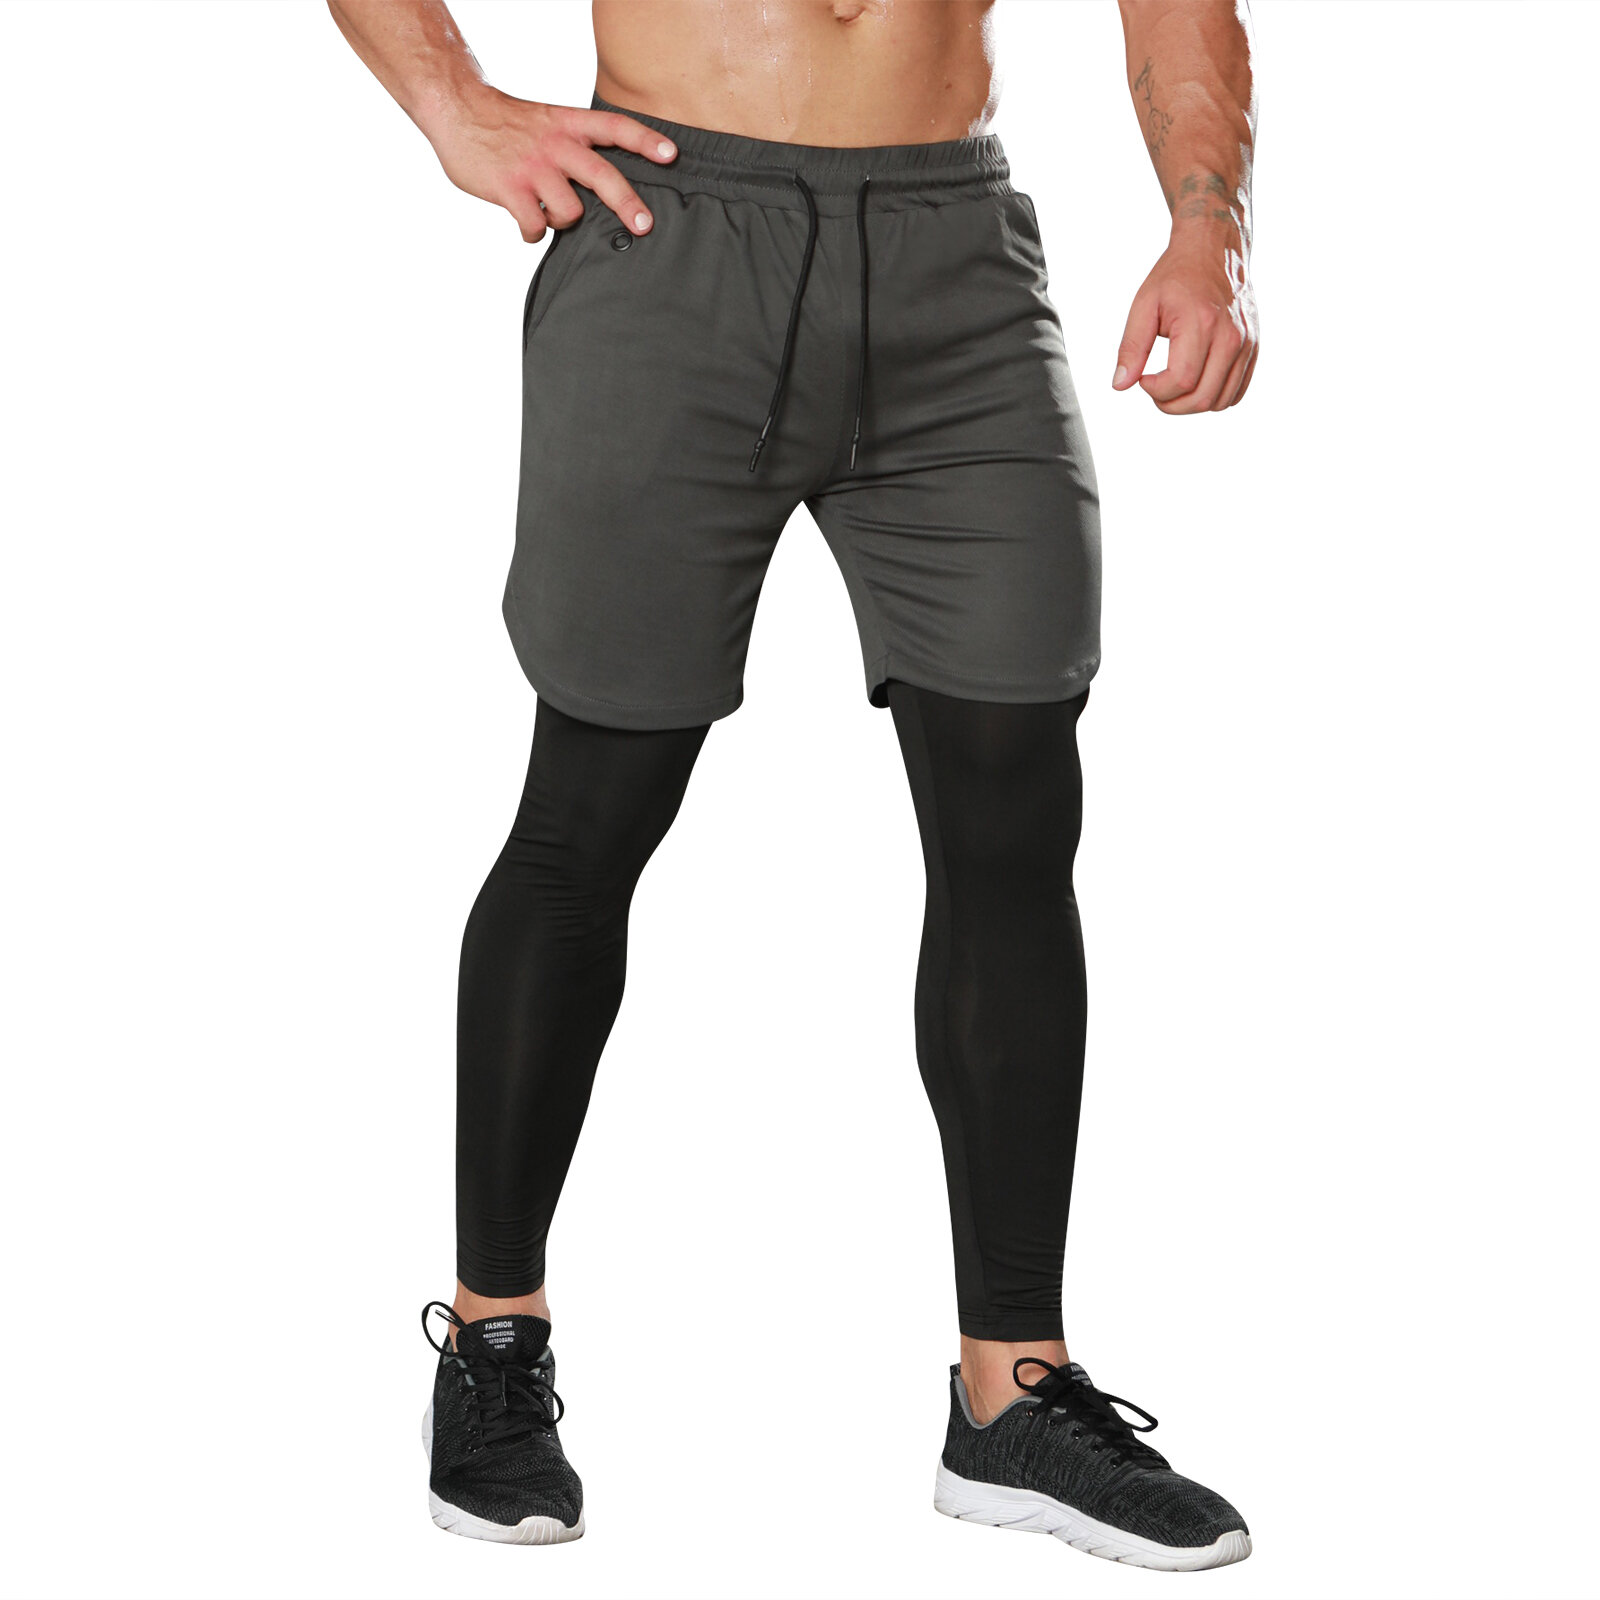 Men's 2 in 1 Grey Gym Shorts Legging With Towel Loop - PKAWAY